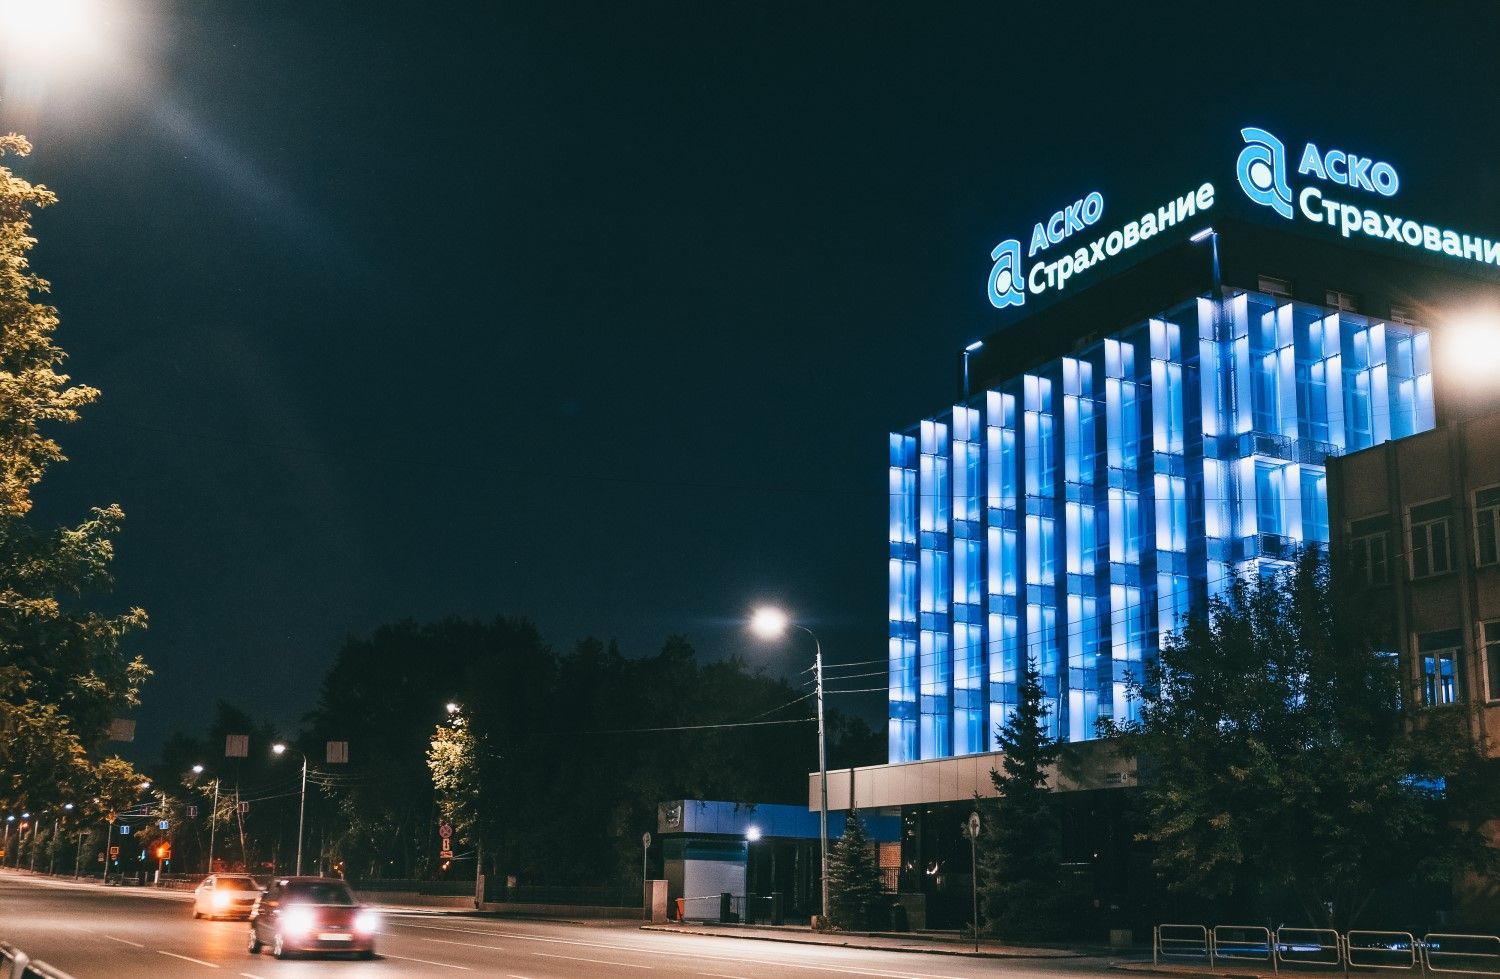 Офис продаж компании «АСКО-СТРАХОВАНИЕ» - освещение бизнес-центра, Челябинск, 2021